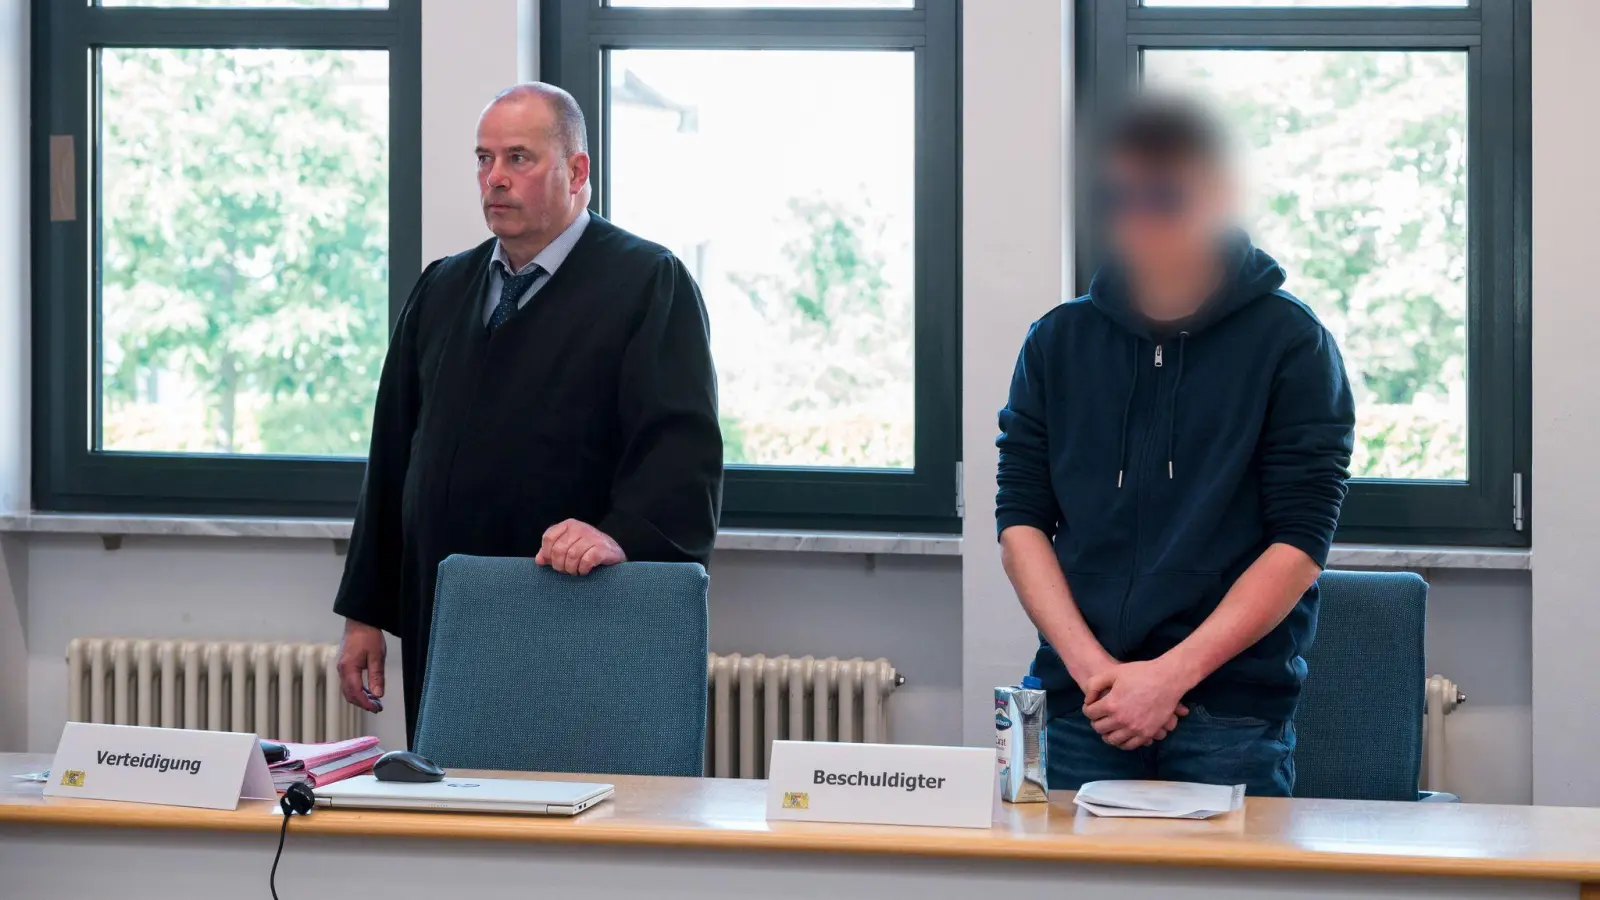 Anwalt Thomas Drehsen (l) und der Beschukldigte (r) stehen zu Beginn der Sitzung im Sitzungssaal. Prozessbeginn wegen des Brandanschlags auf die Synagoge von Ermreuth. (Foto: Daniel Vogl/dpa)